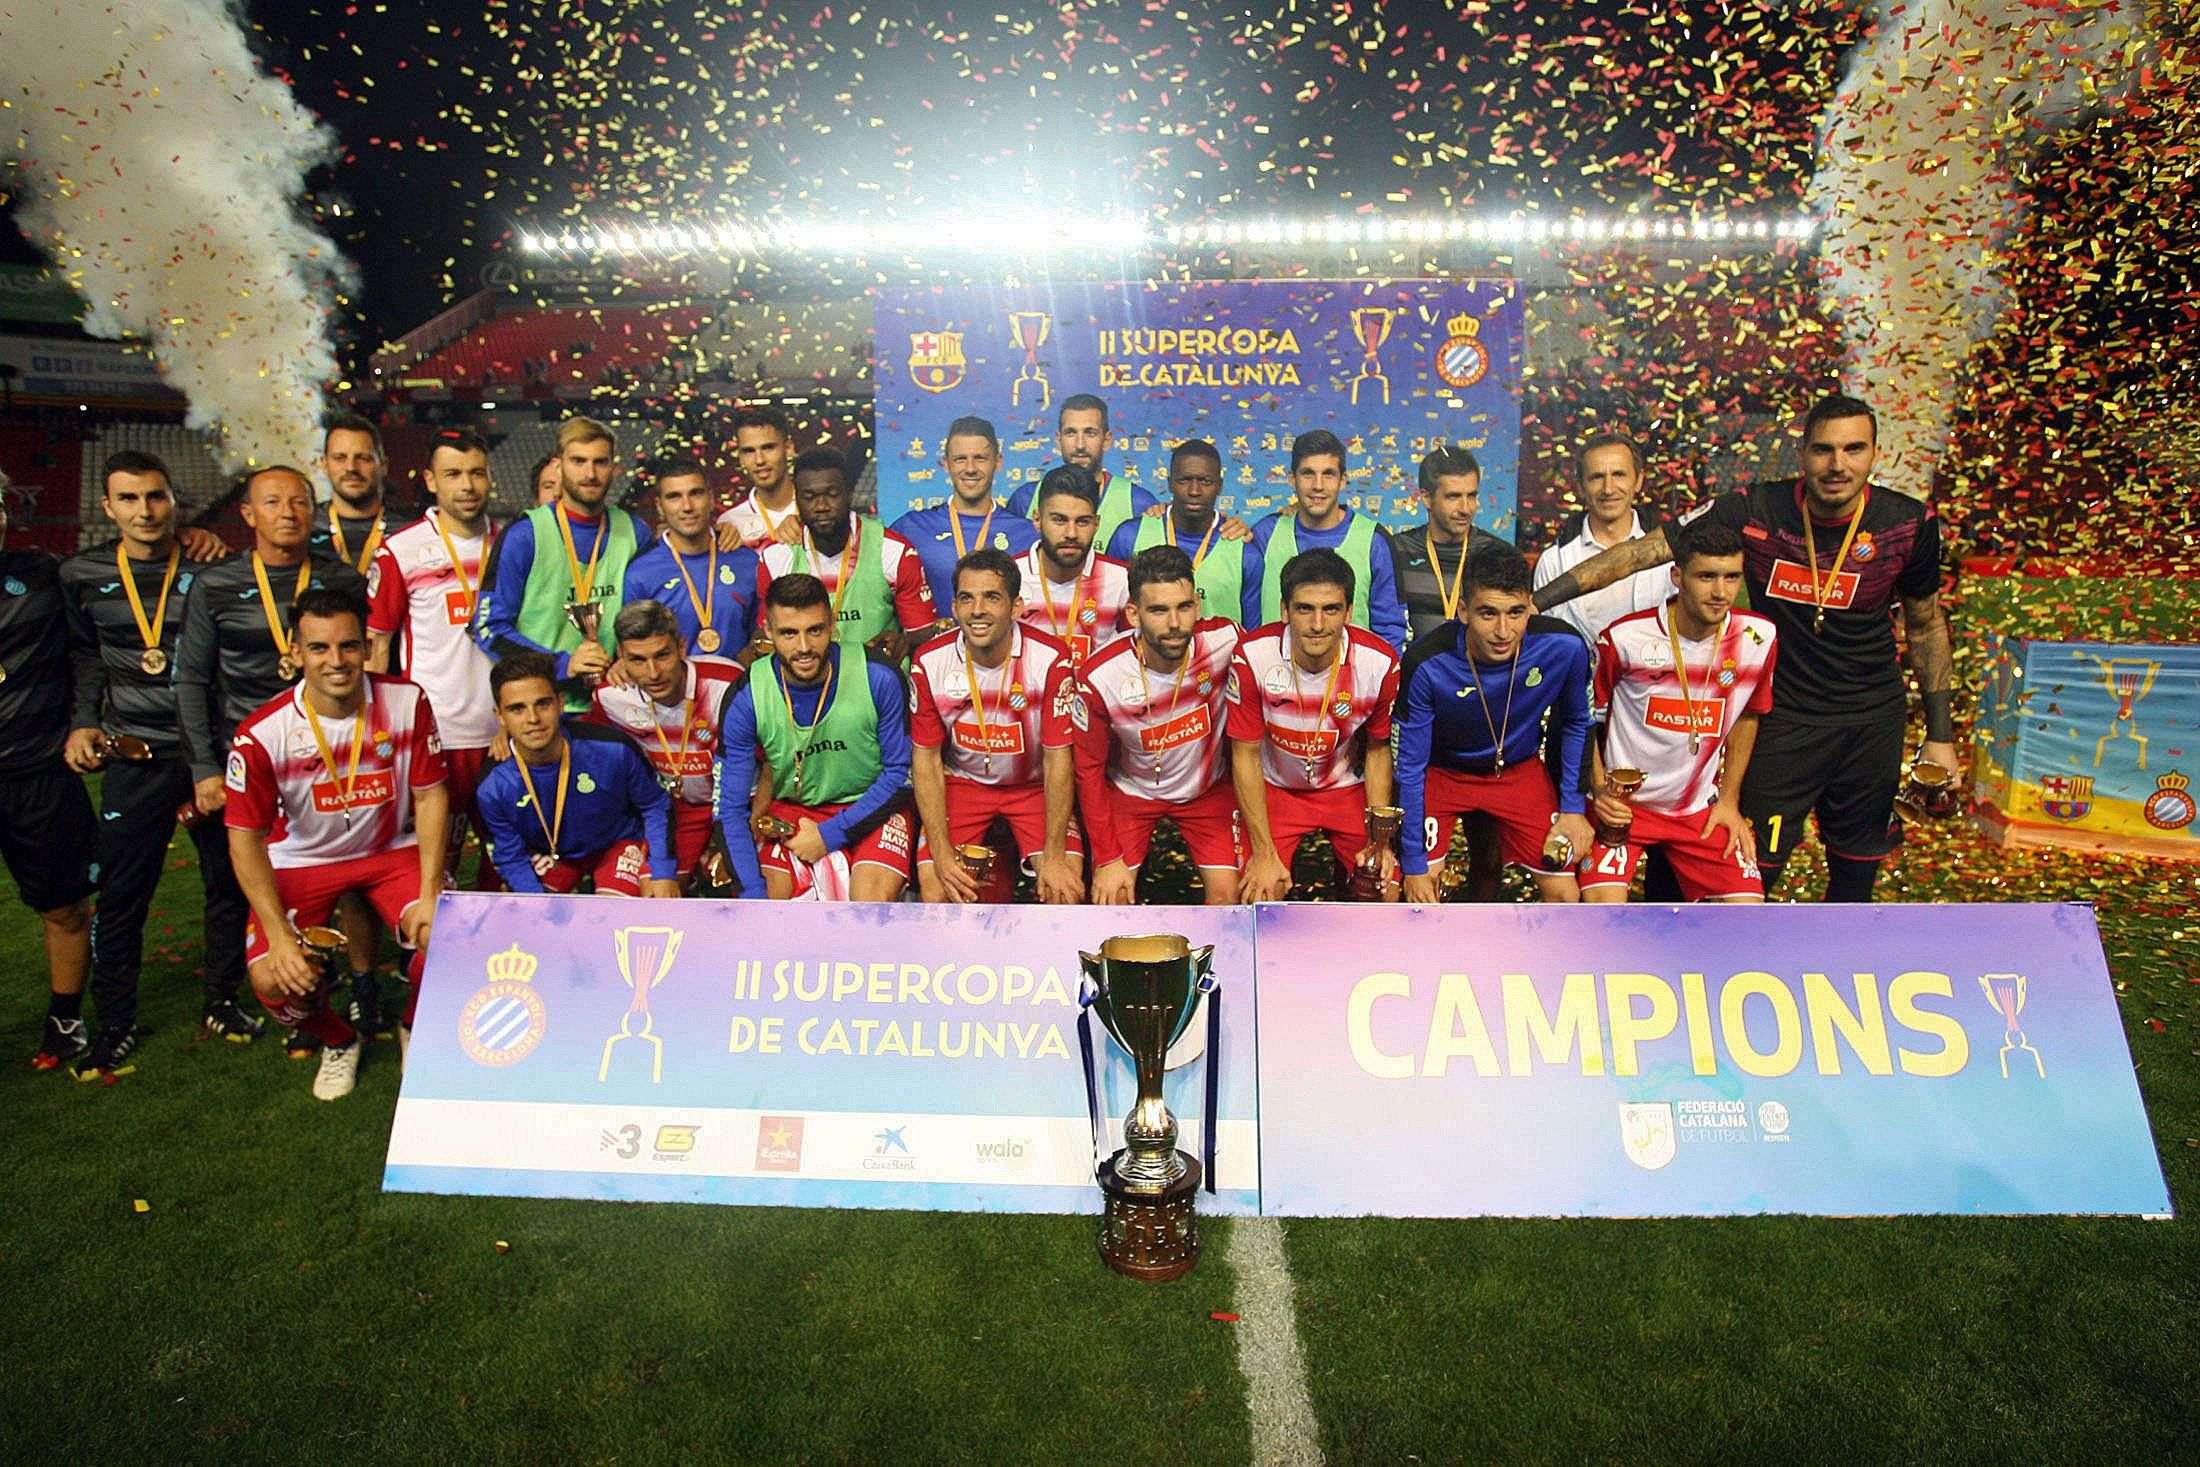 El Espanyol es supercampeón de Catalunya (0-1)